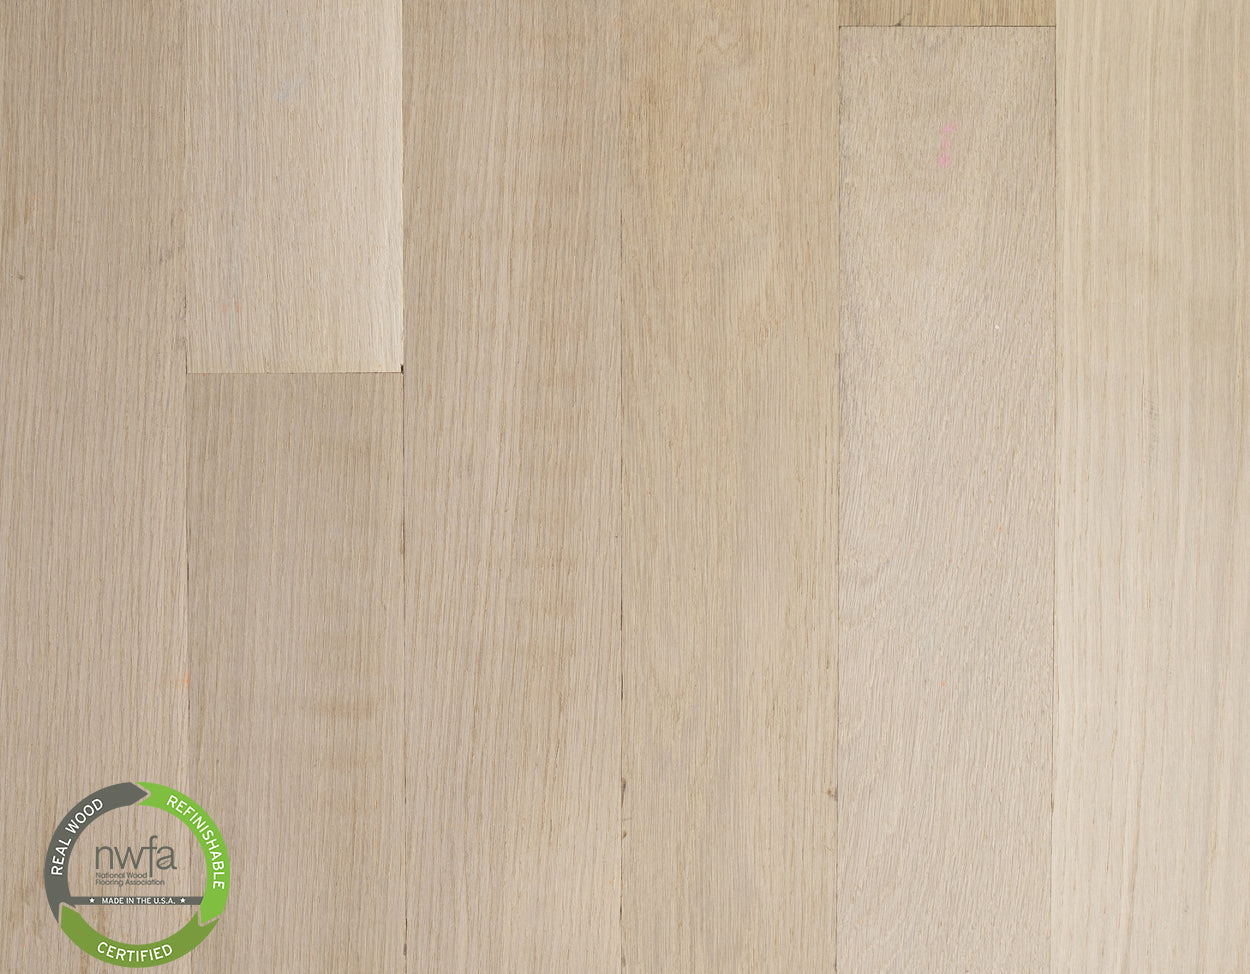 White Oak - Select Grade - Unfinished Engineered Hardwood